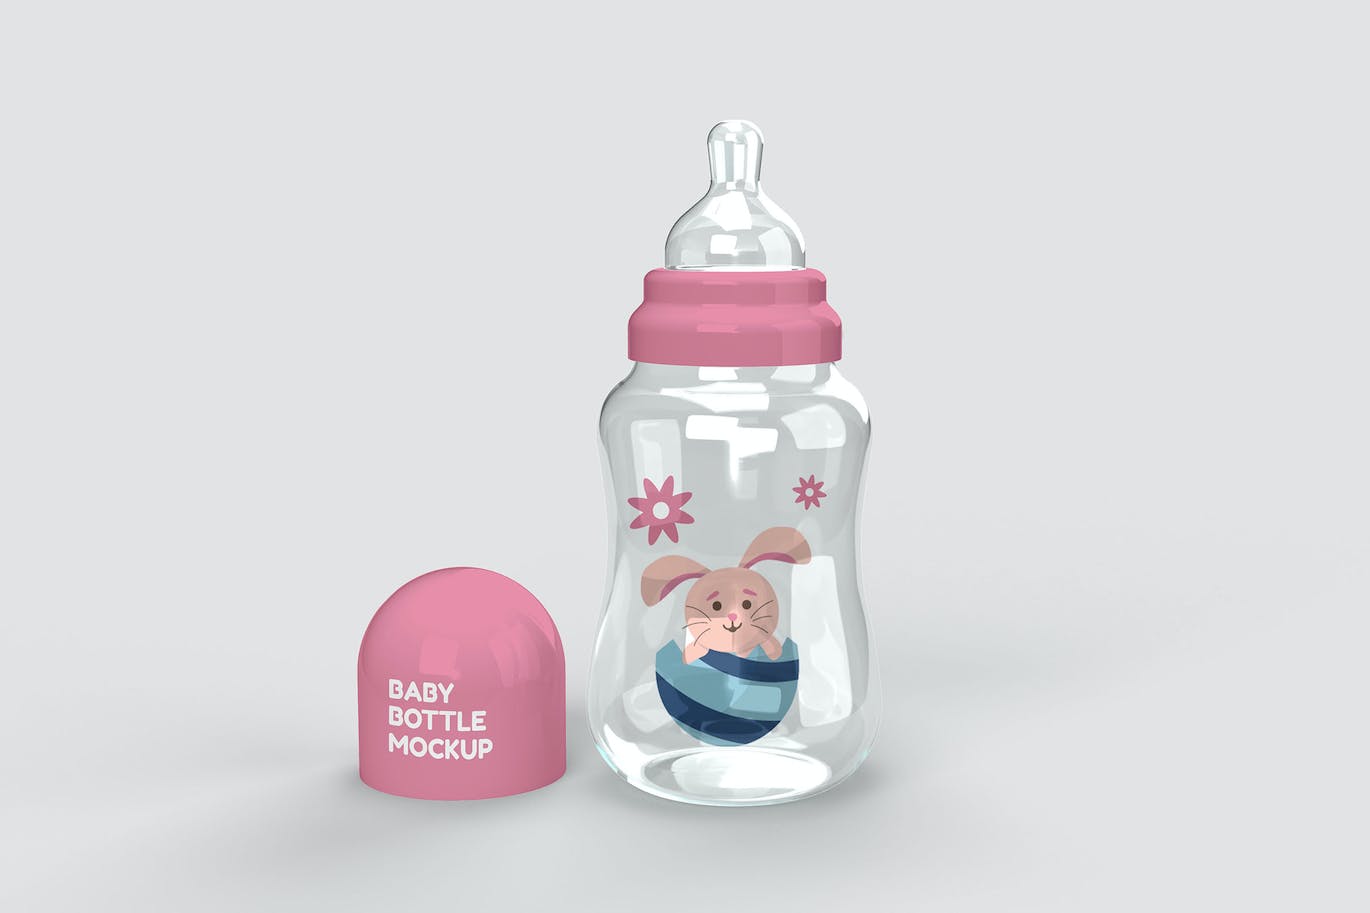 婴儿奶瓶图案Logo设计样机图 Baby Bottle Mockup 样机素材 第1张